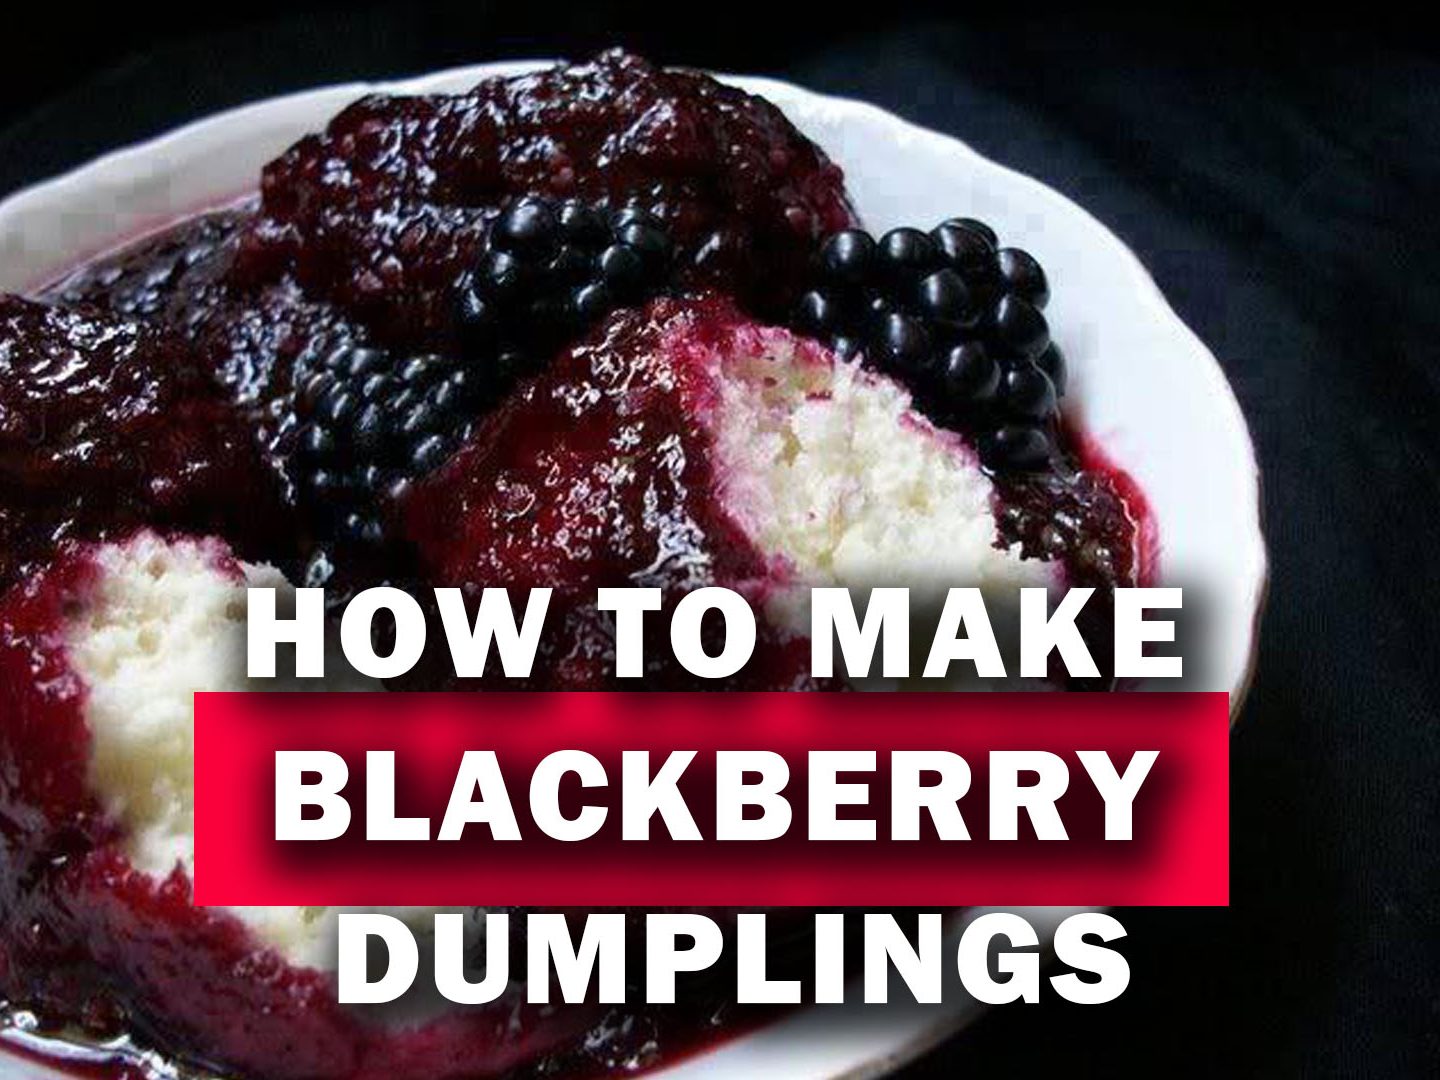 How to Make Blackberry Dumplings